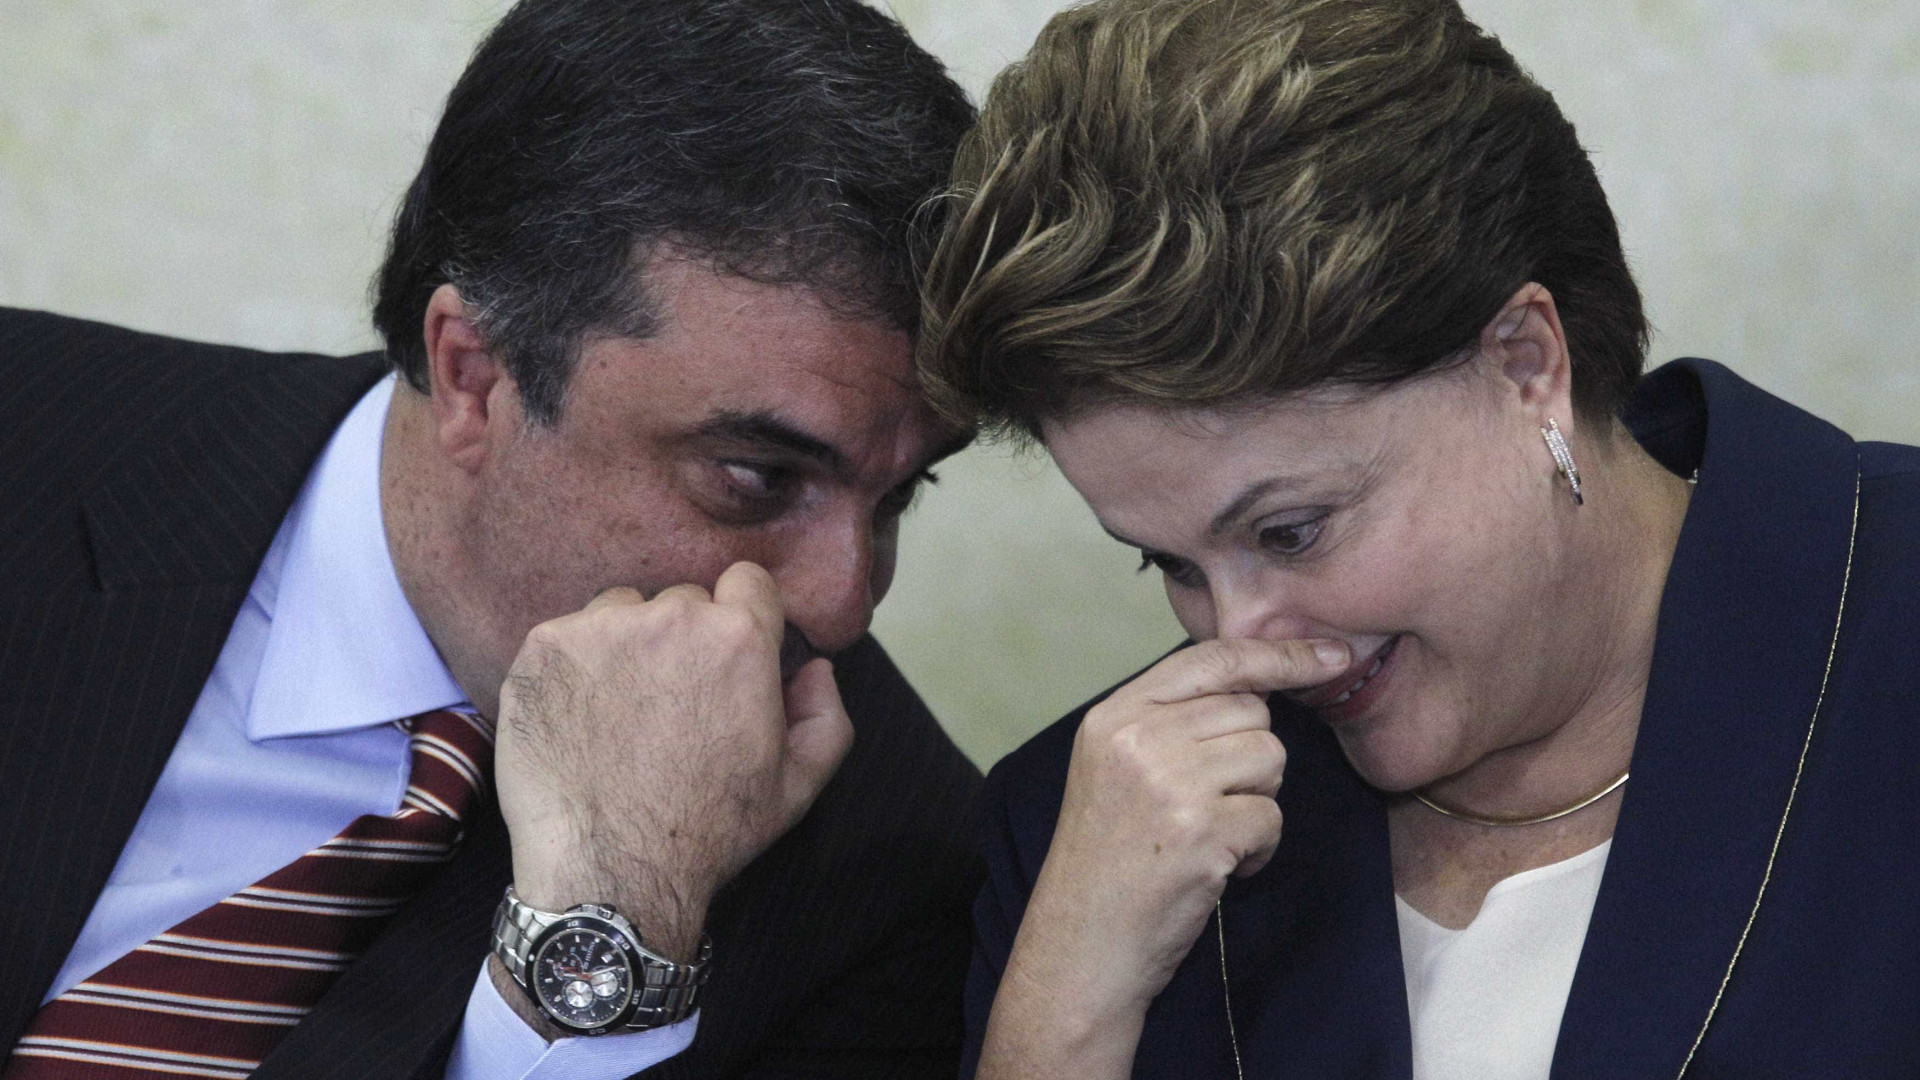 "PT precisa fazer uma reflexão", diz advogado de Dilma